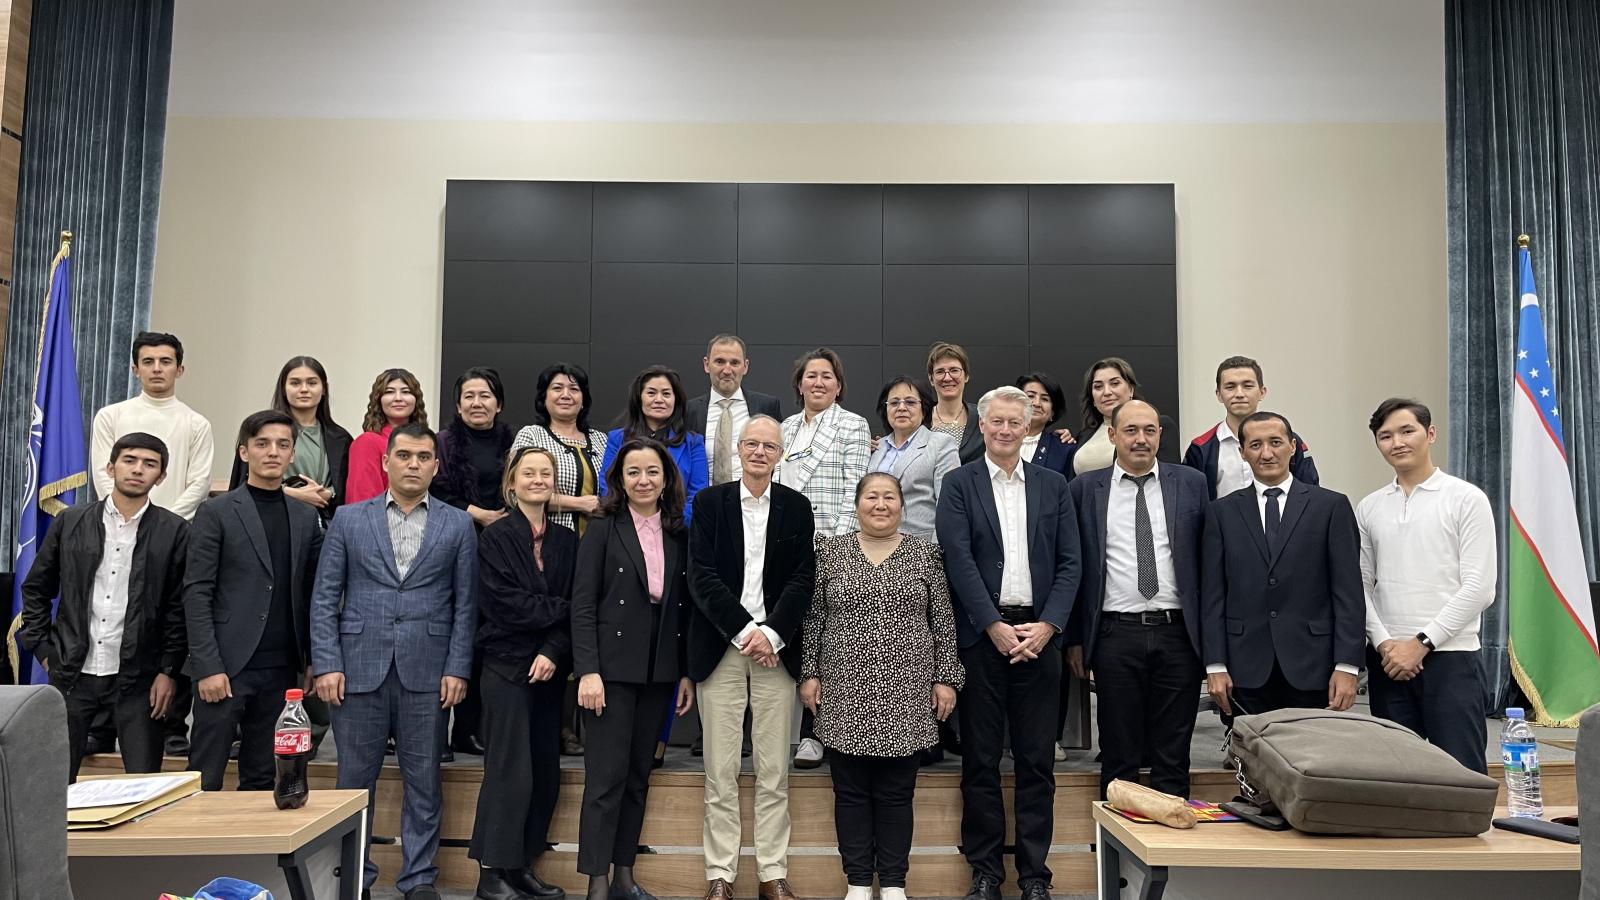 Gruppenfoto der Teilnehmenden der Netzwerkkonferenz in Taschkent